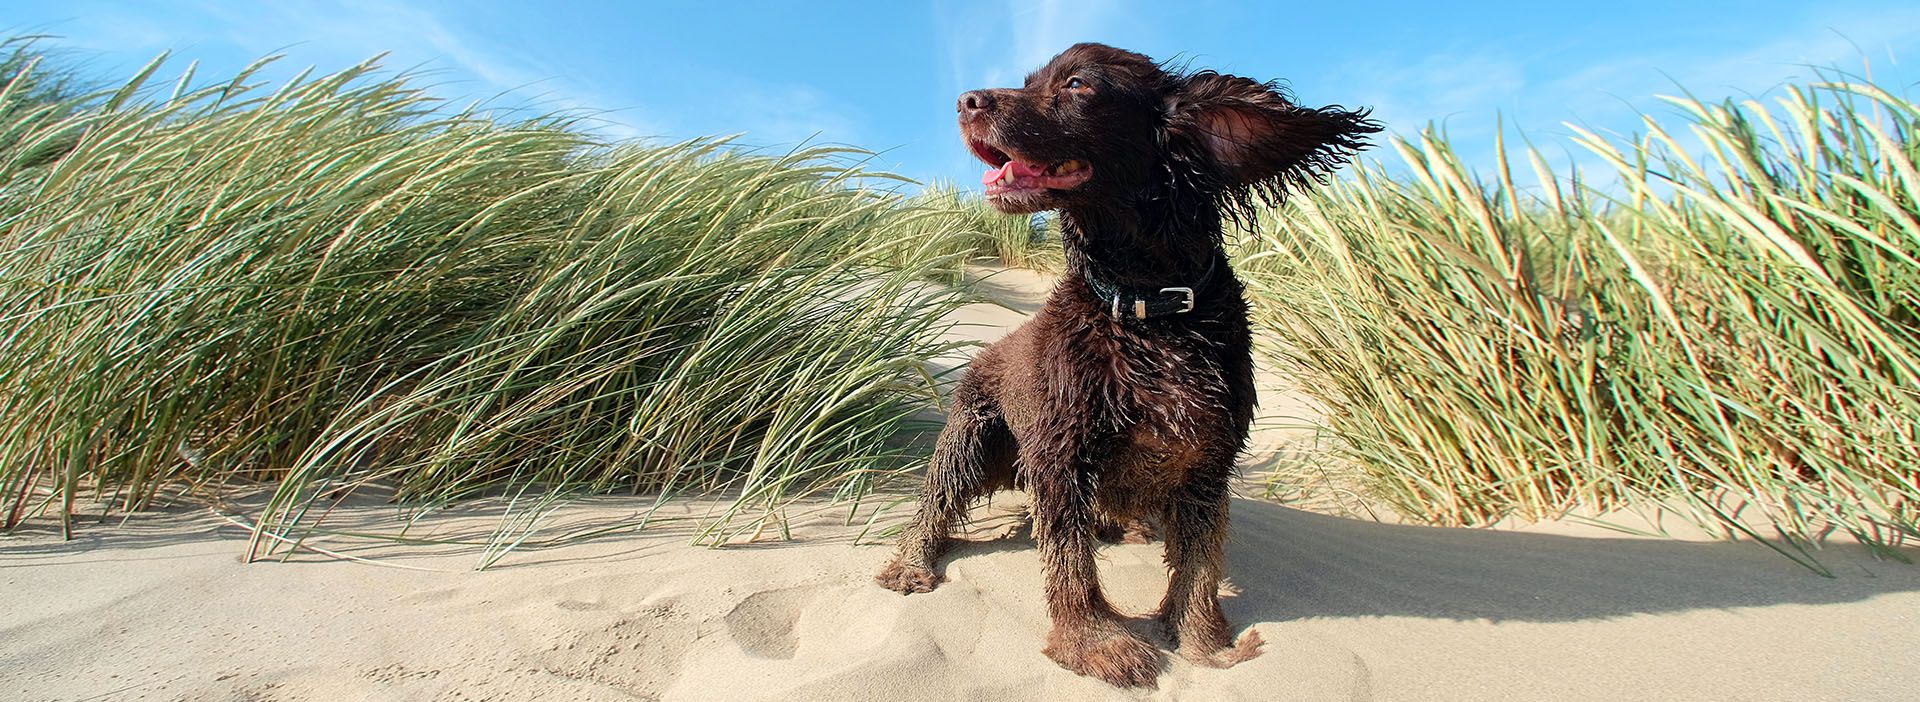 Hund Welpe am Strand im Wind Sommer